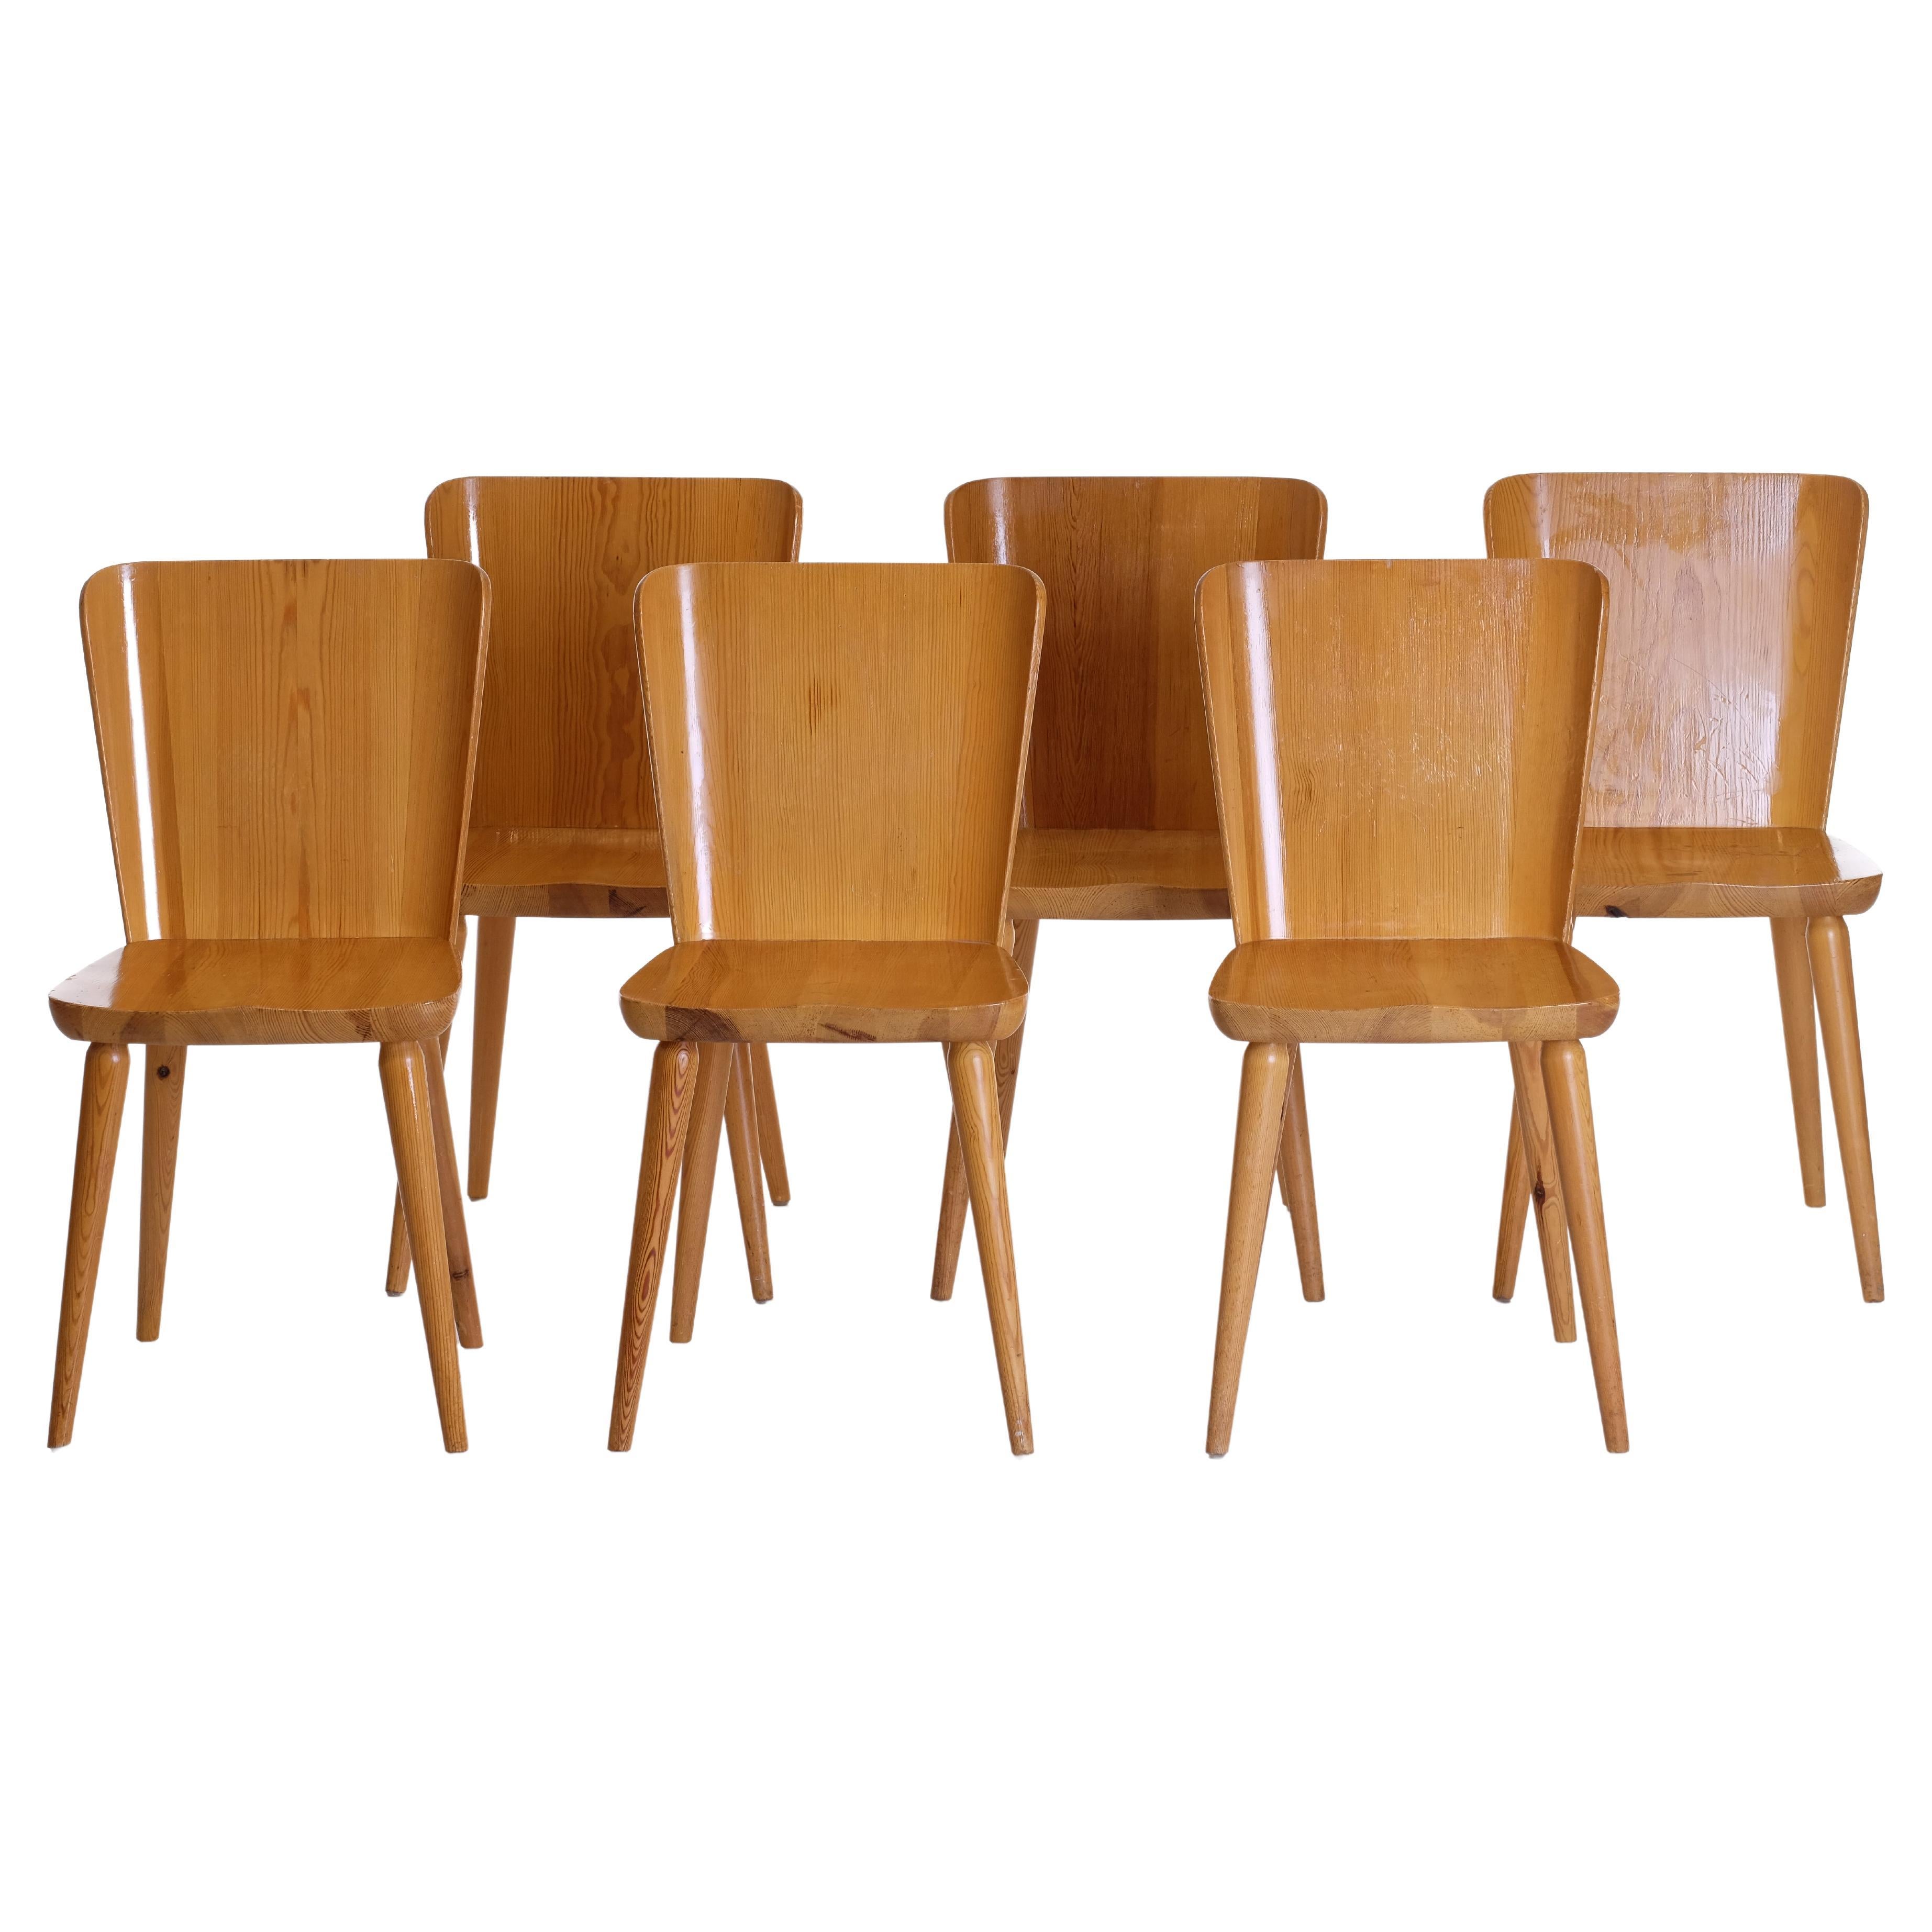 6 Stühle aus schwedischer Kiefer von Göran Malmvall, Svensk Fur, 1960er Jahre